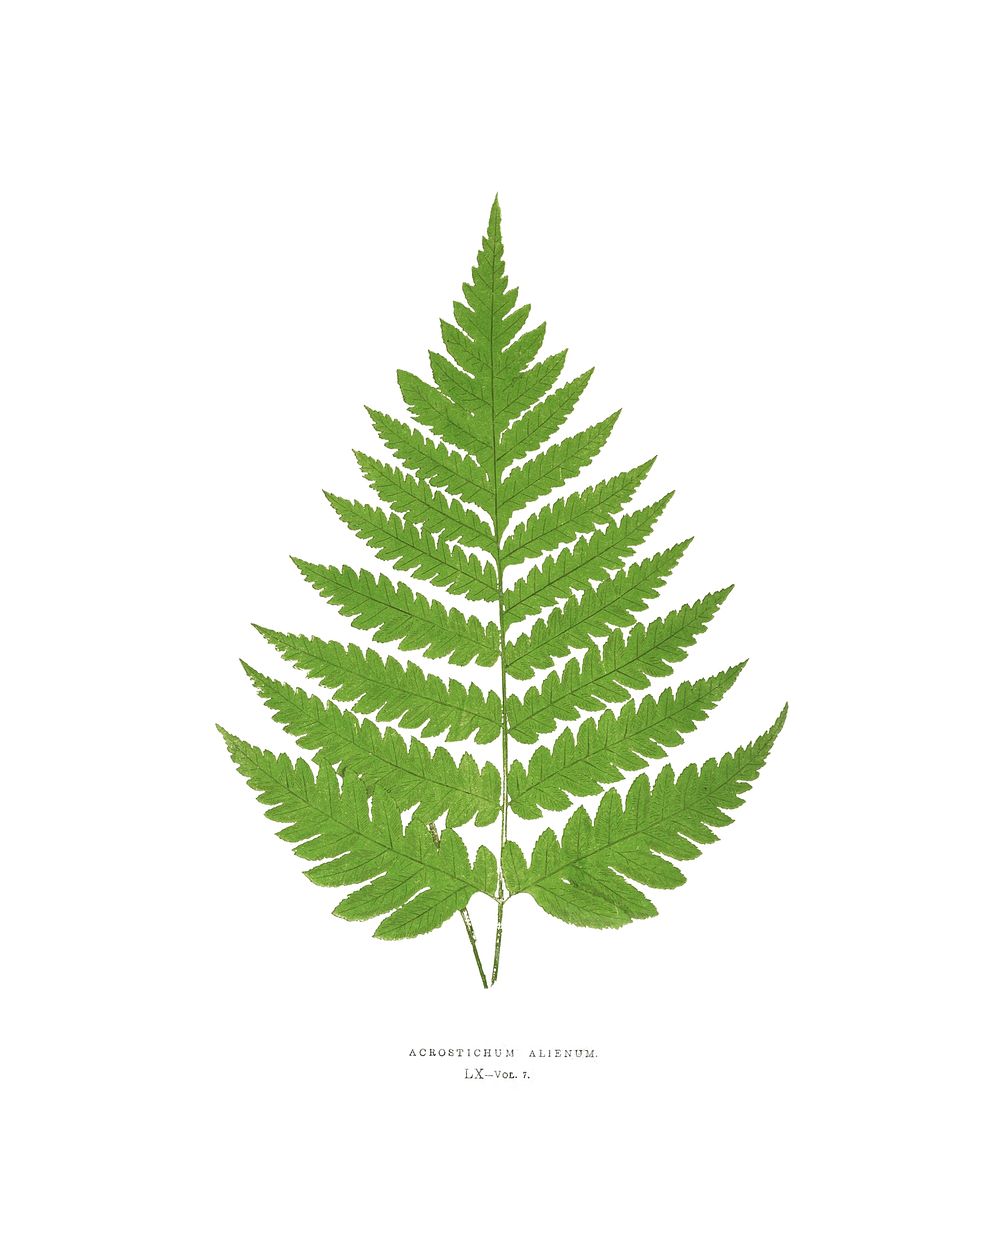 Fern leaf vintage illustration by Edward Joseph Lowe. Digitally enhanced by rawpixel.